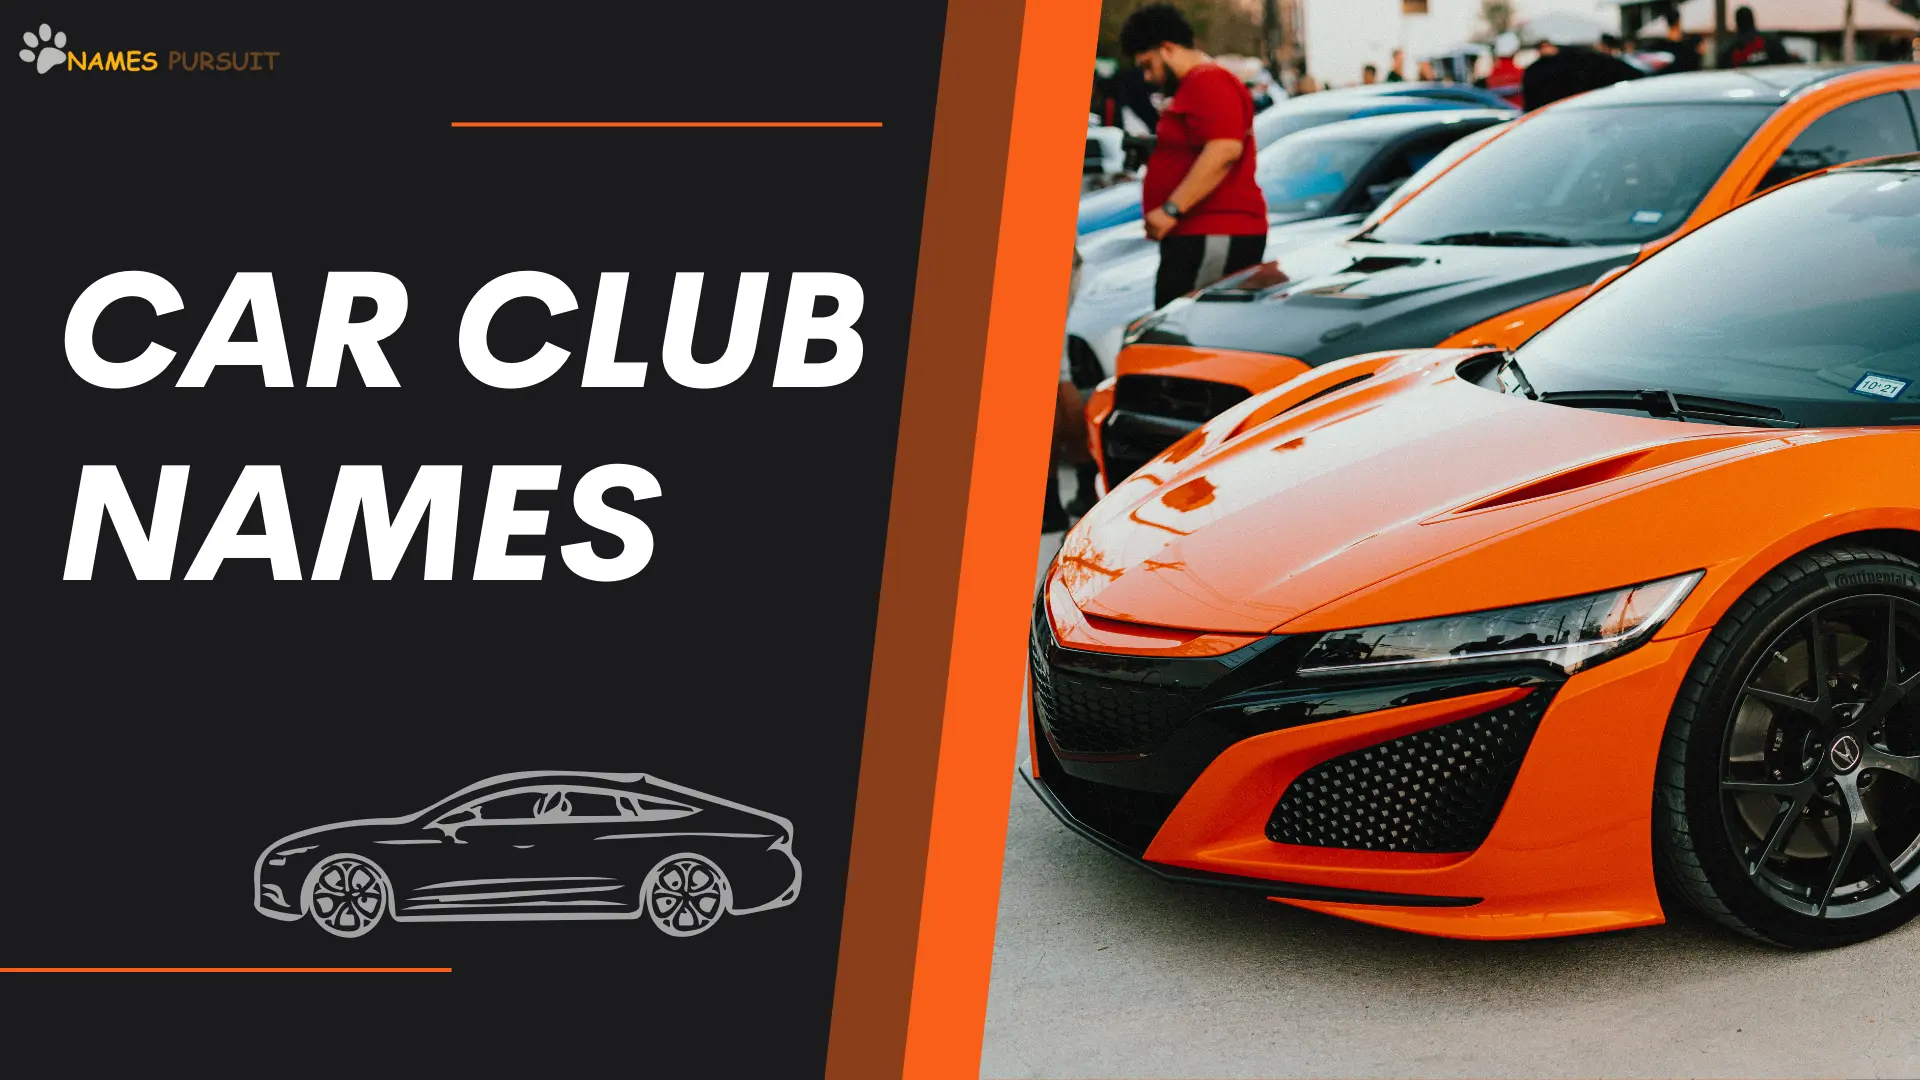 Car Club Names